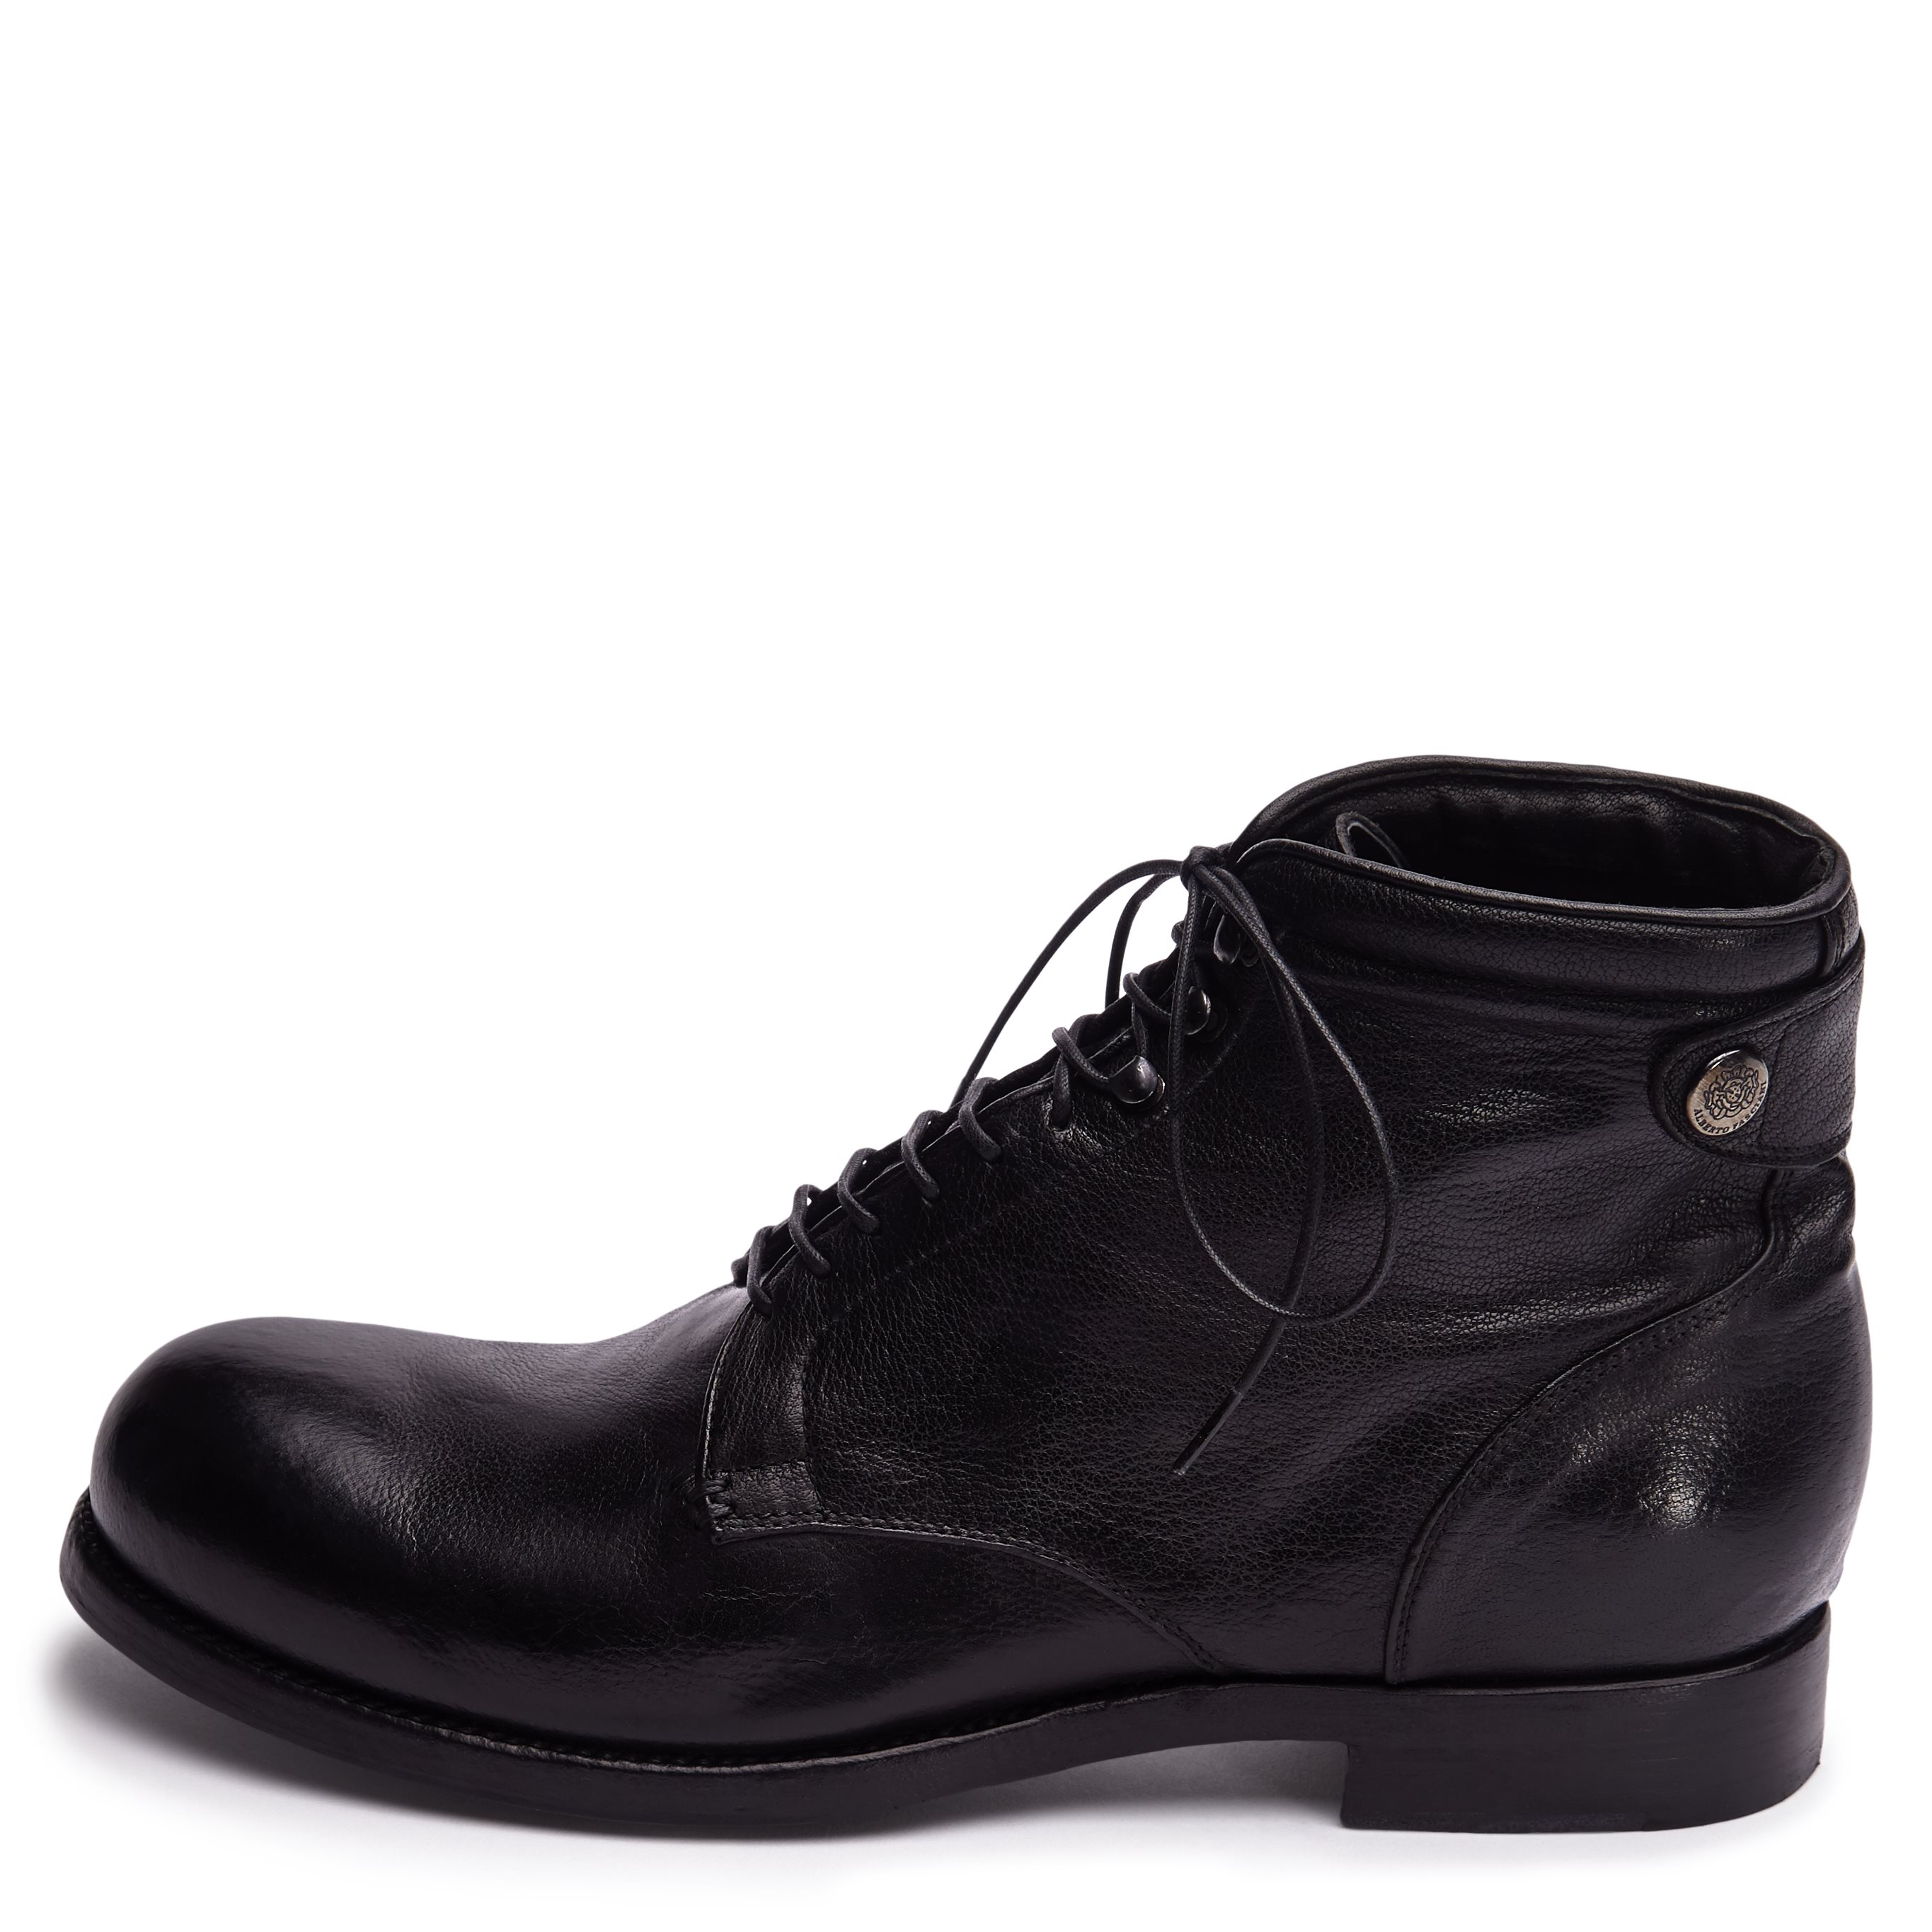 Boots - Shoes - Black